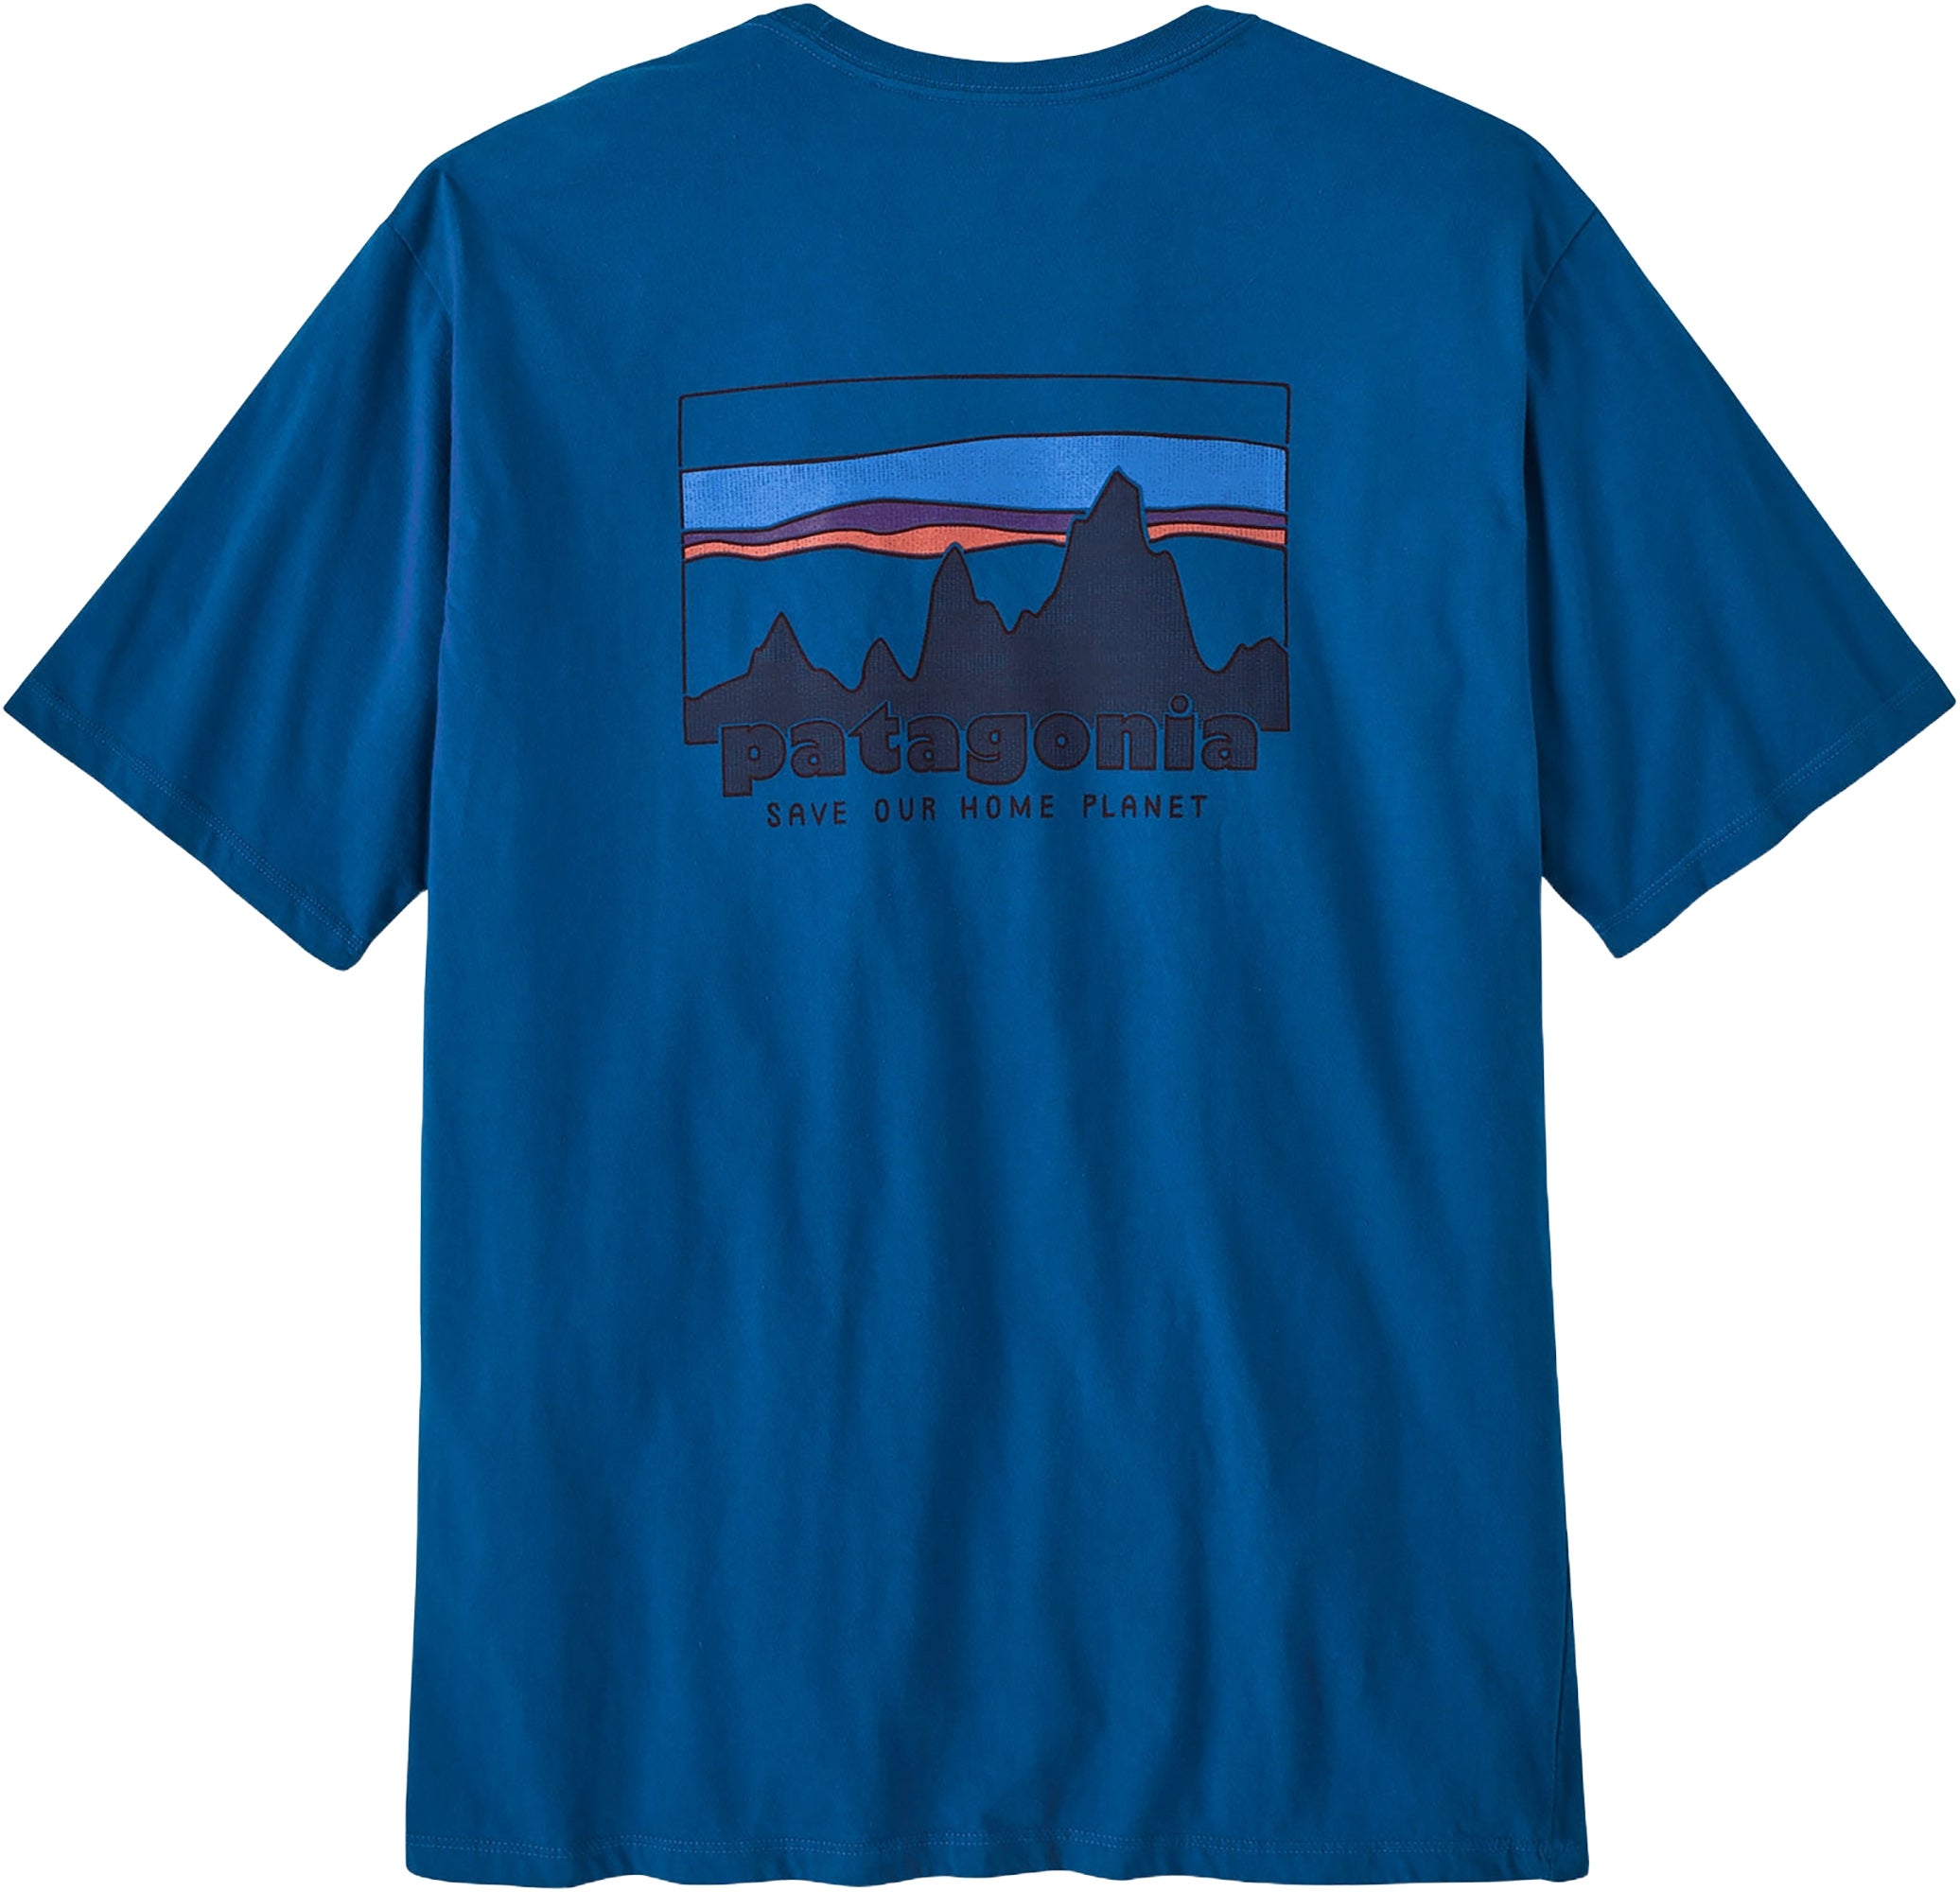 Patagonia 73 Skyline Organic T-Shirt - Men's XS Endless Blue